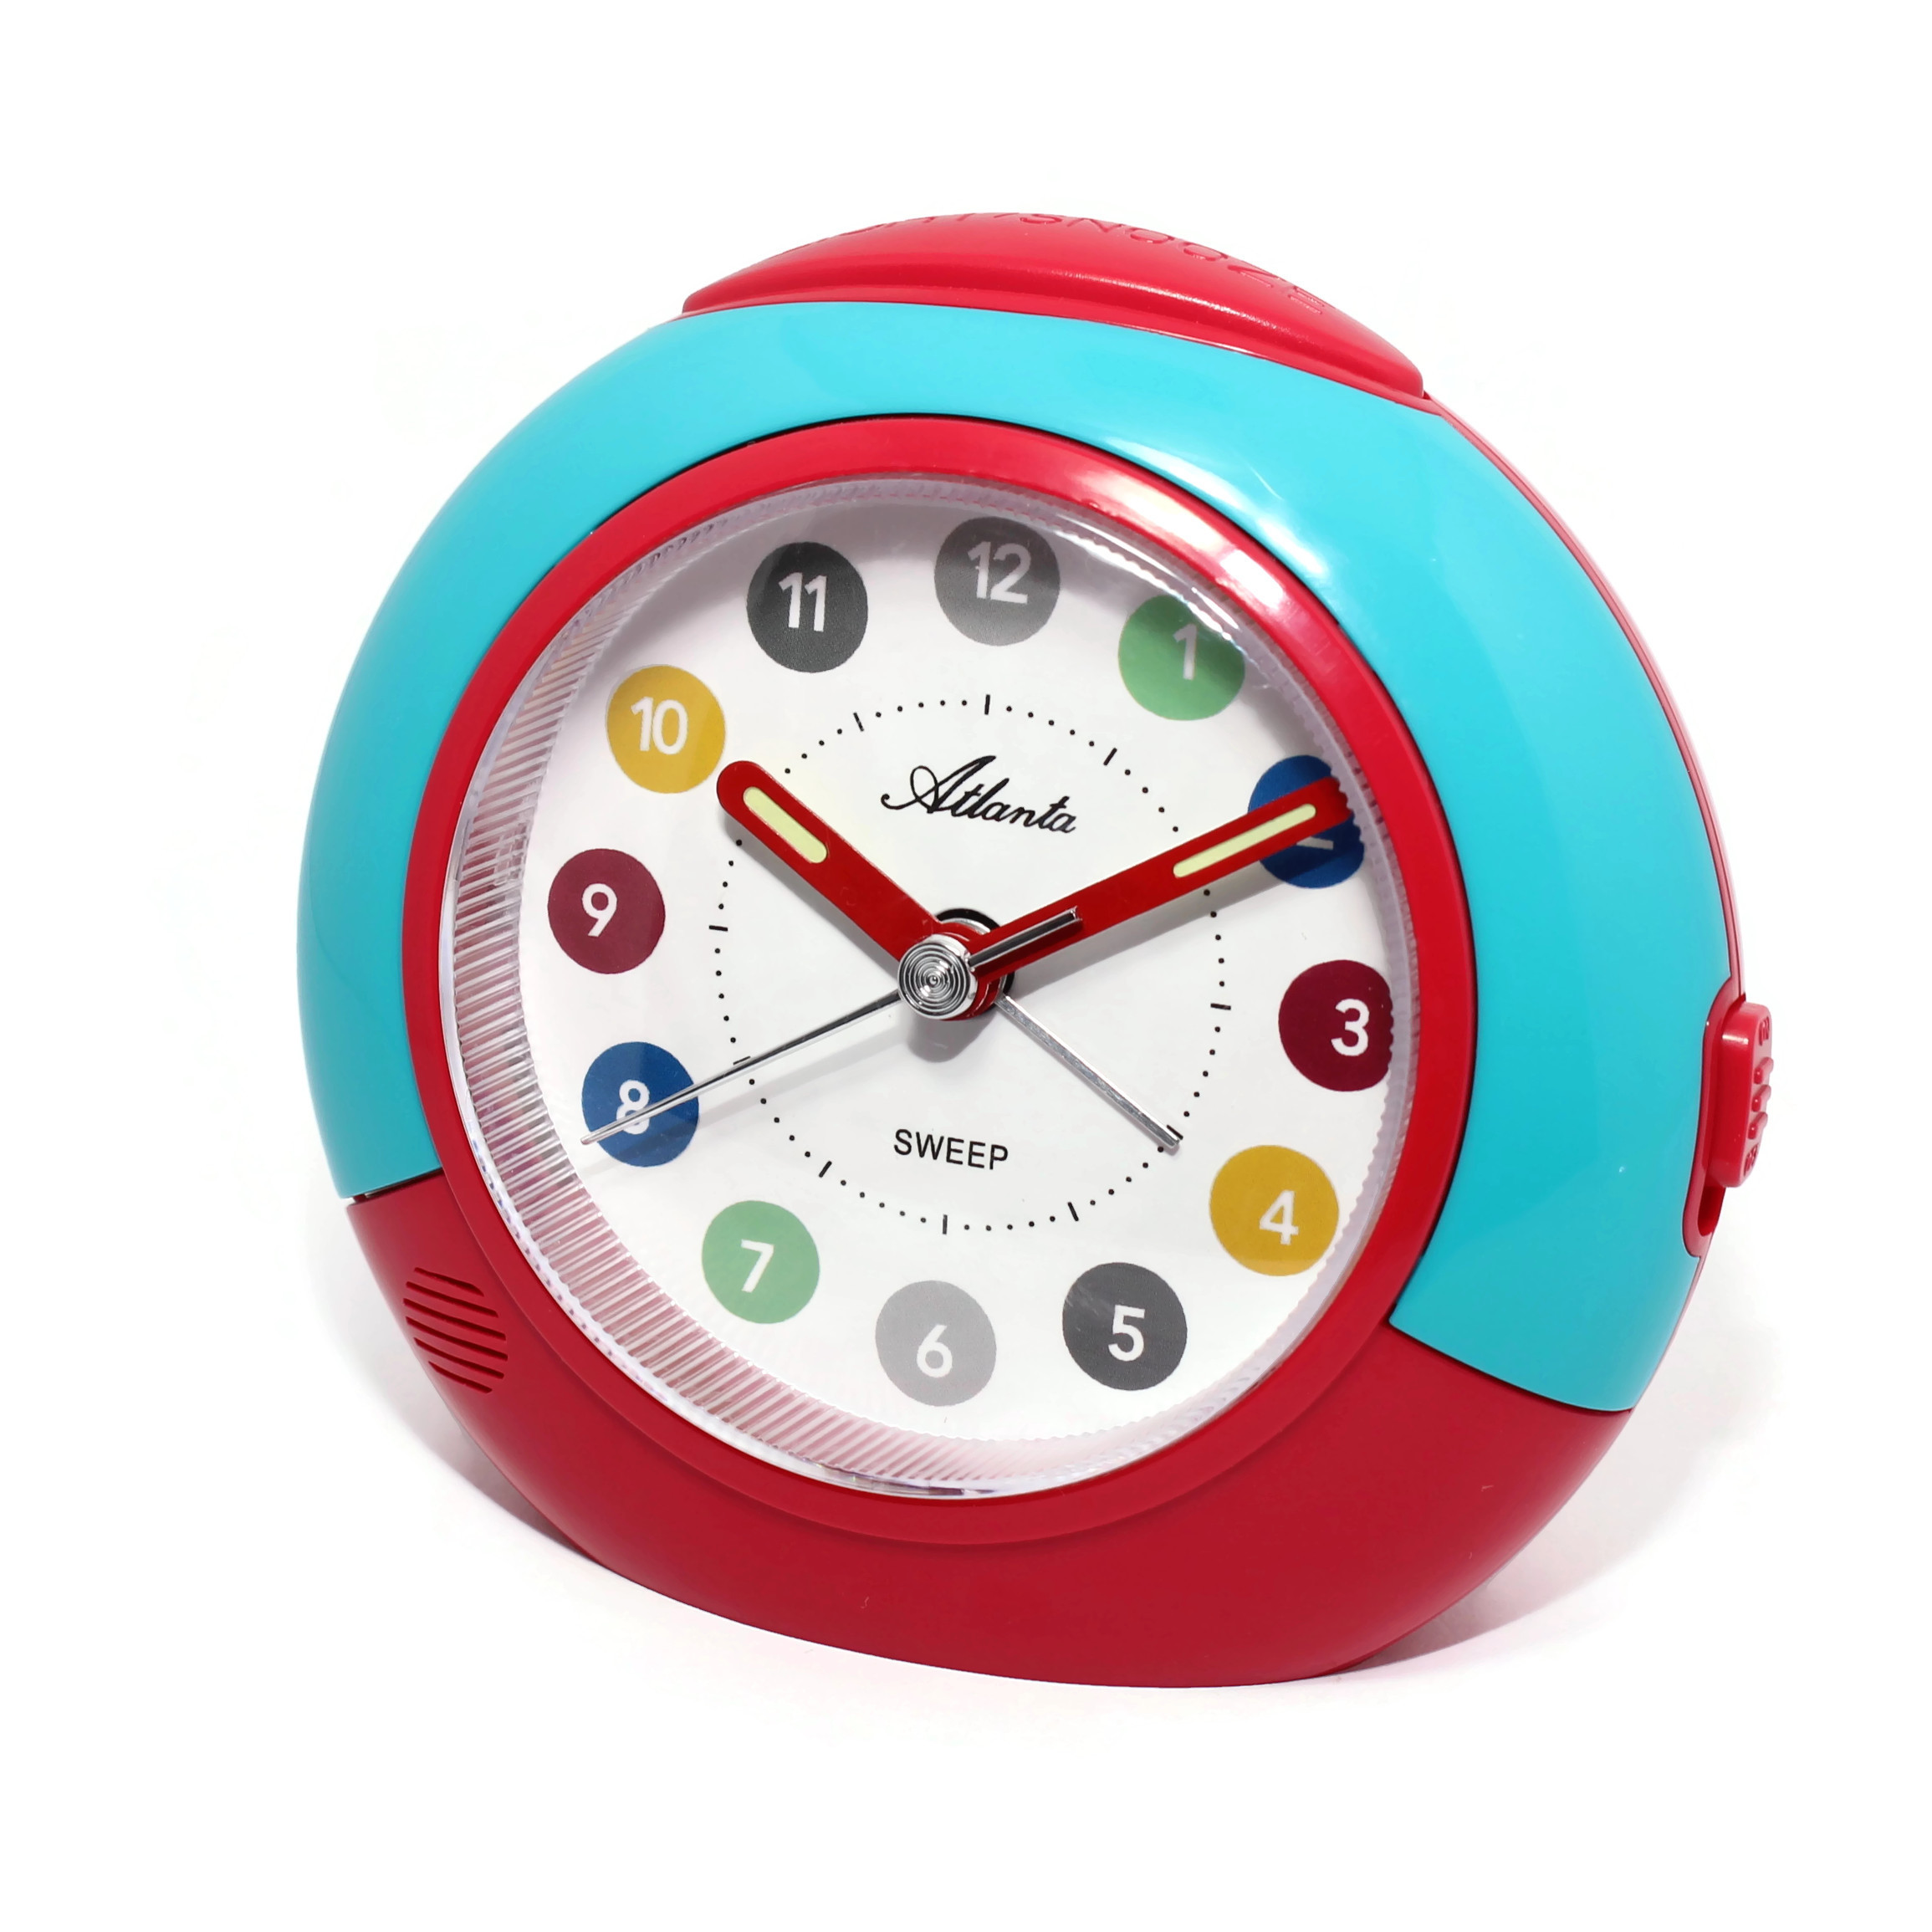 Atlanta 1526/15 red/blue children's alarm clock